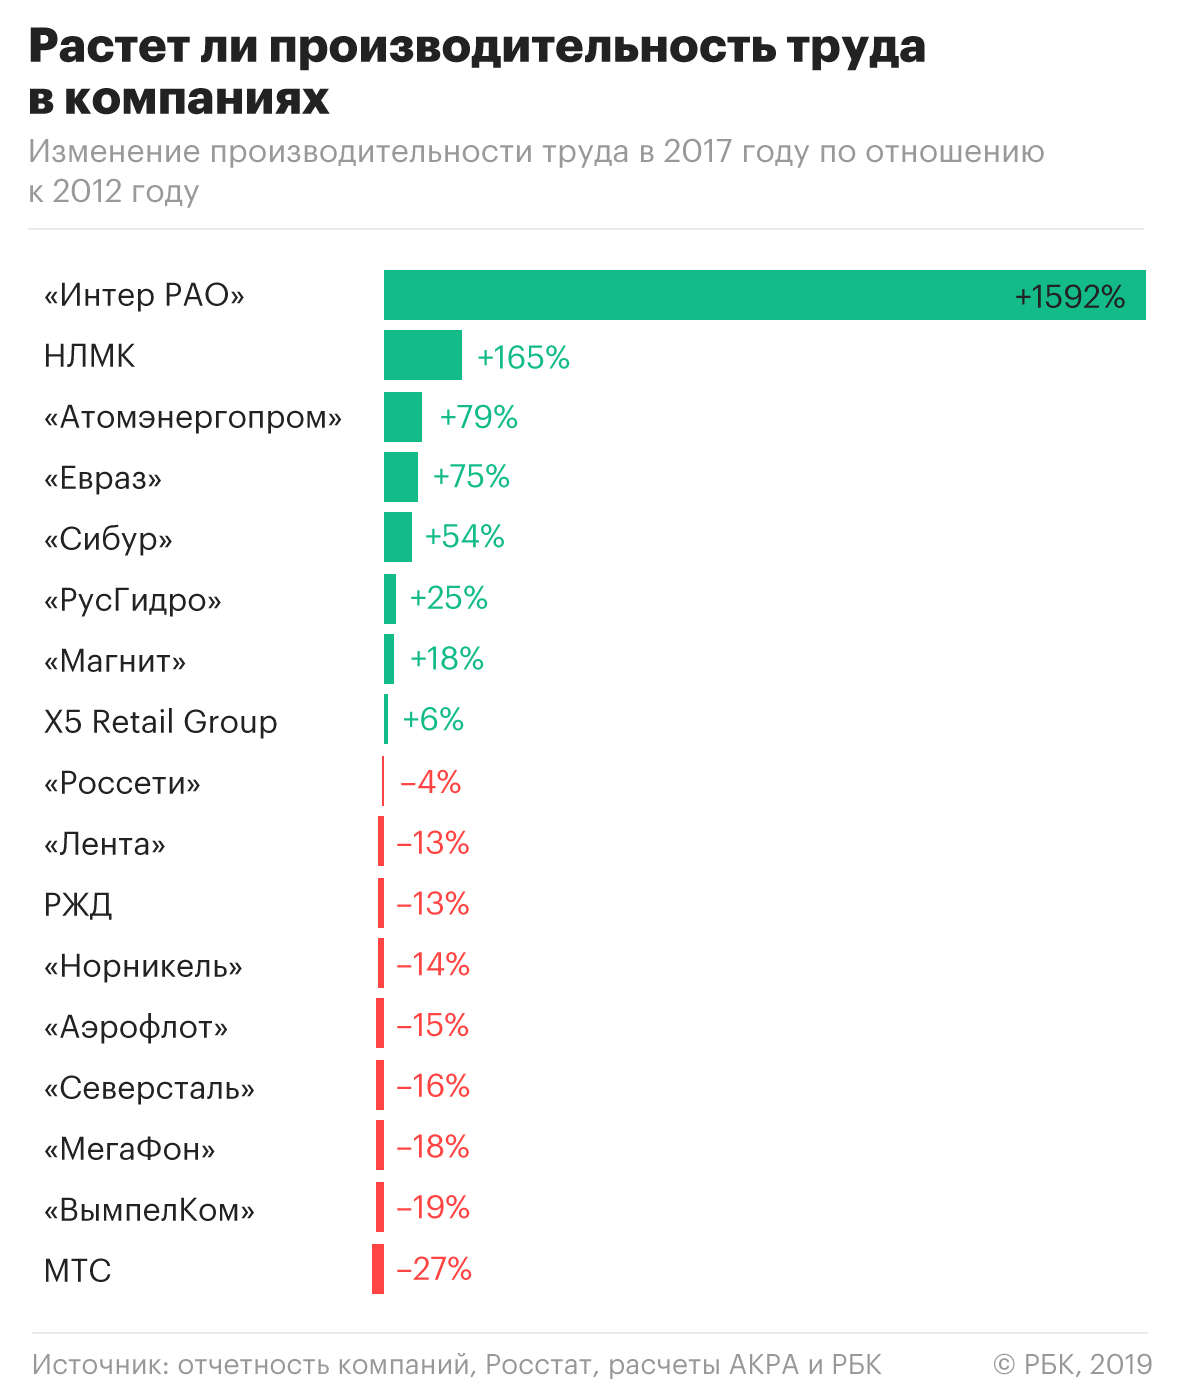 Эксперты оценили производительность крупнейших несырьевых компаний России